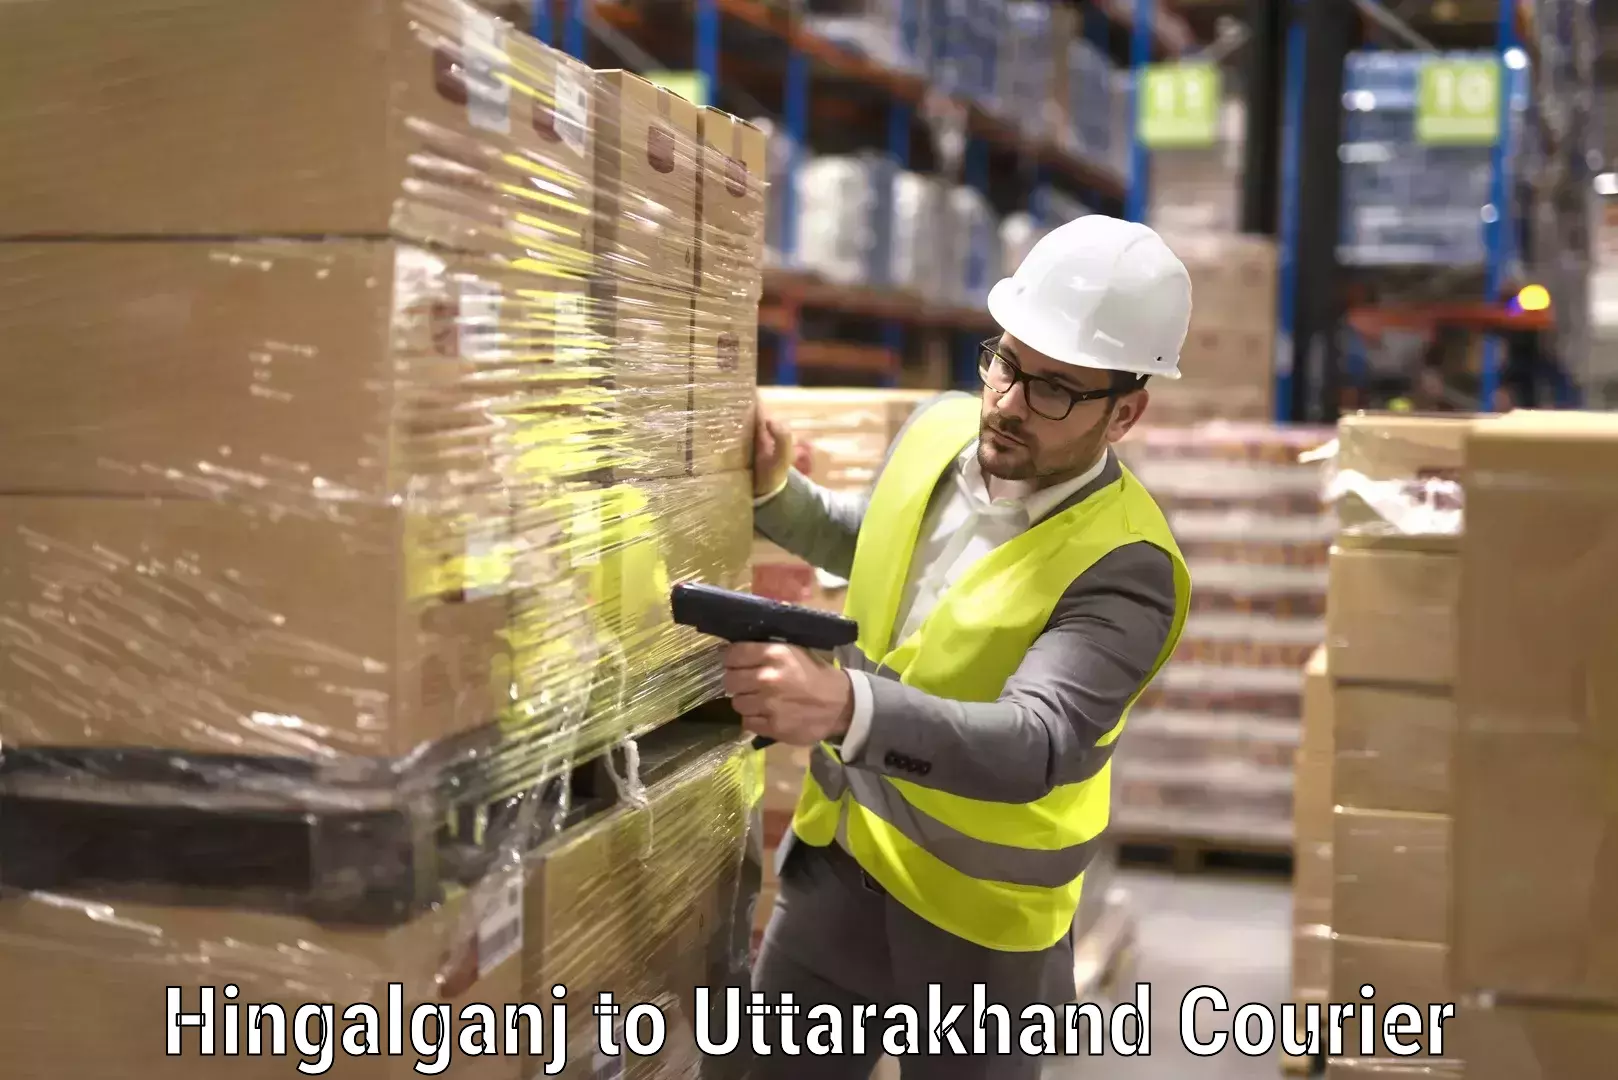 Furniture moving experts Hingalganj to Uttarakhand